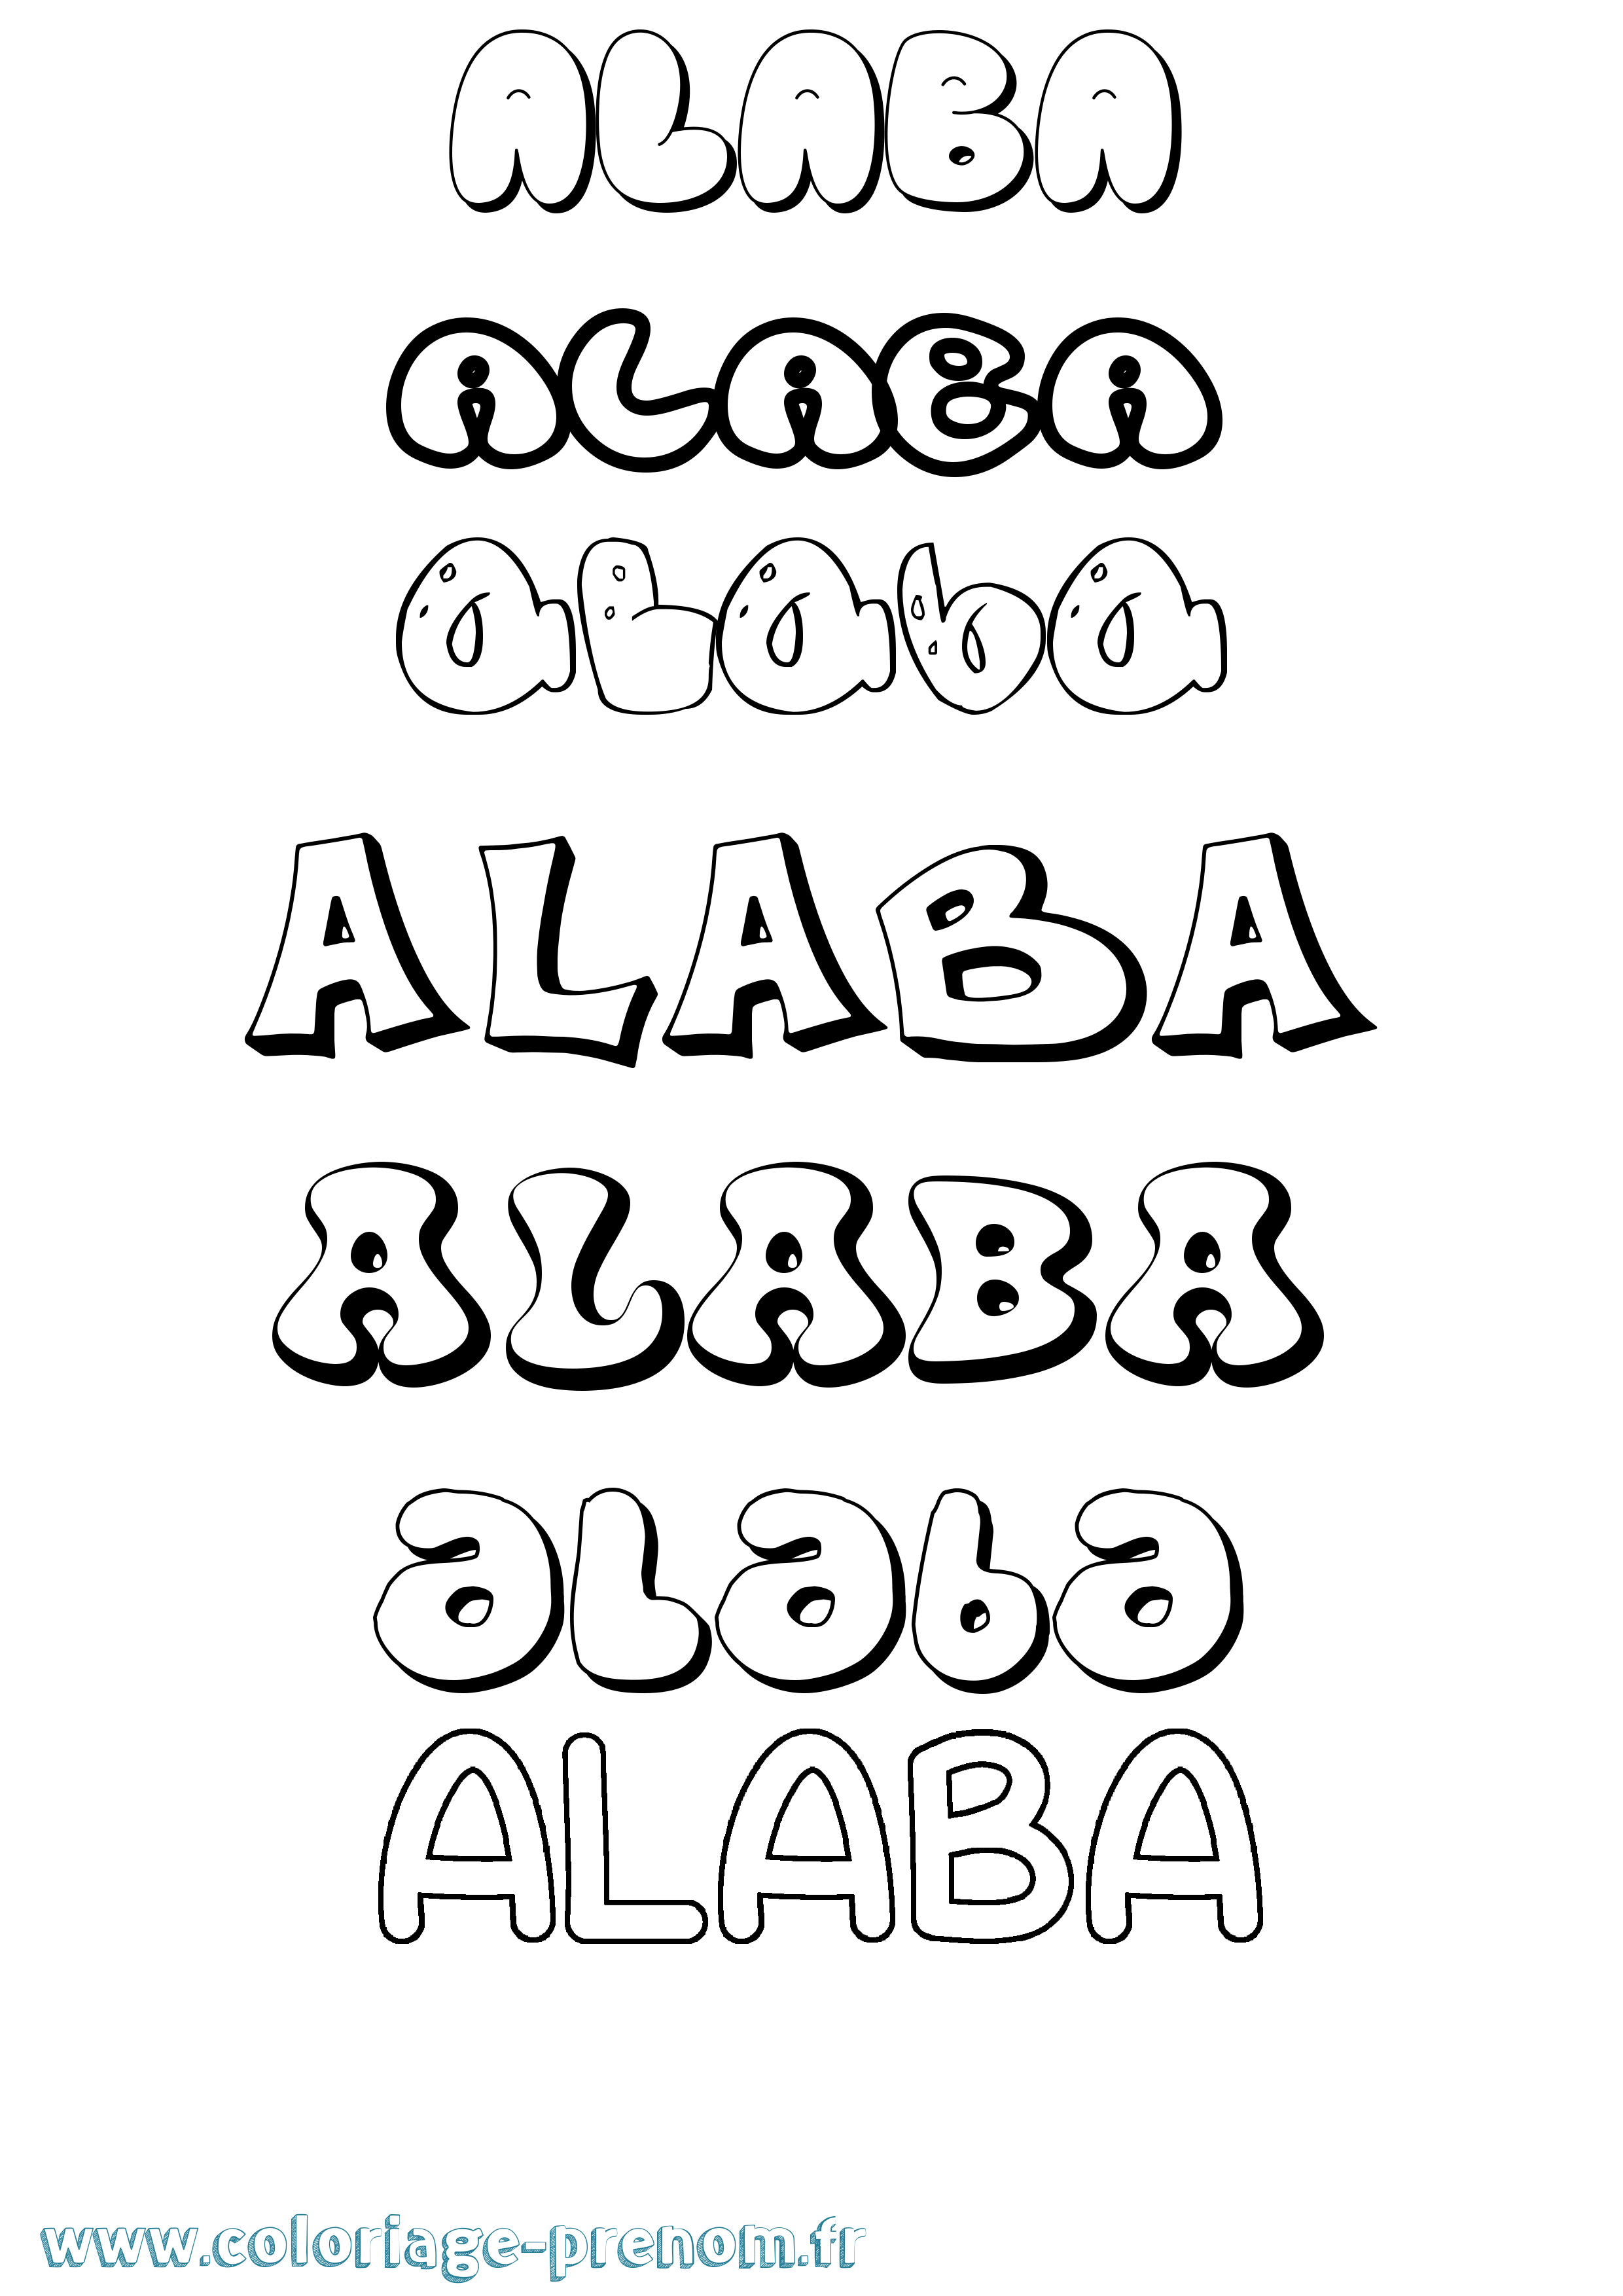 Coloriage prénom Alaba Bubble